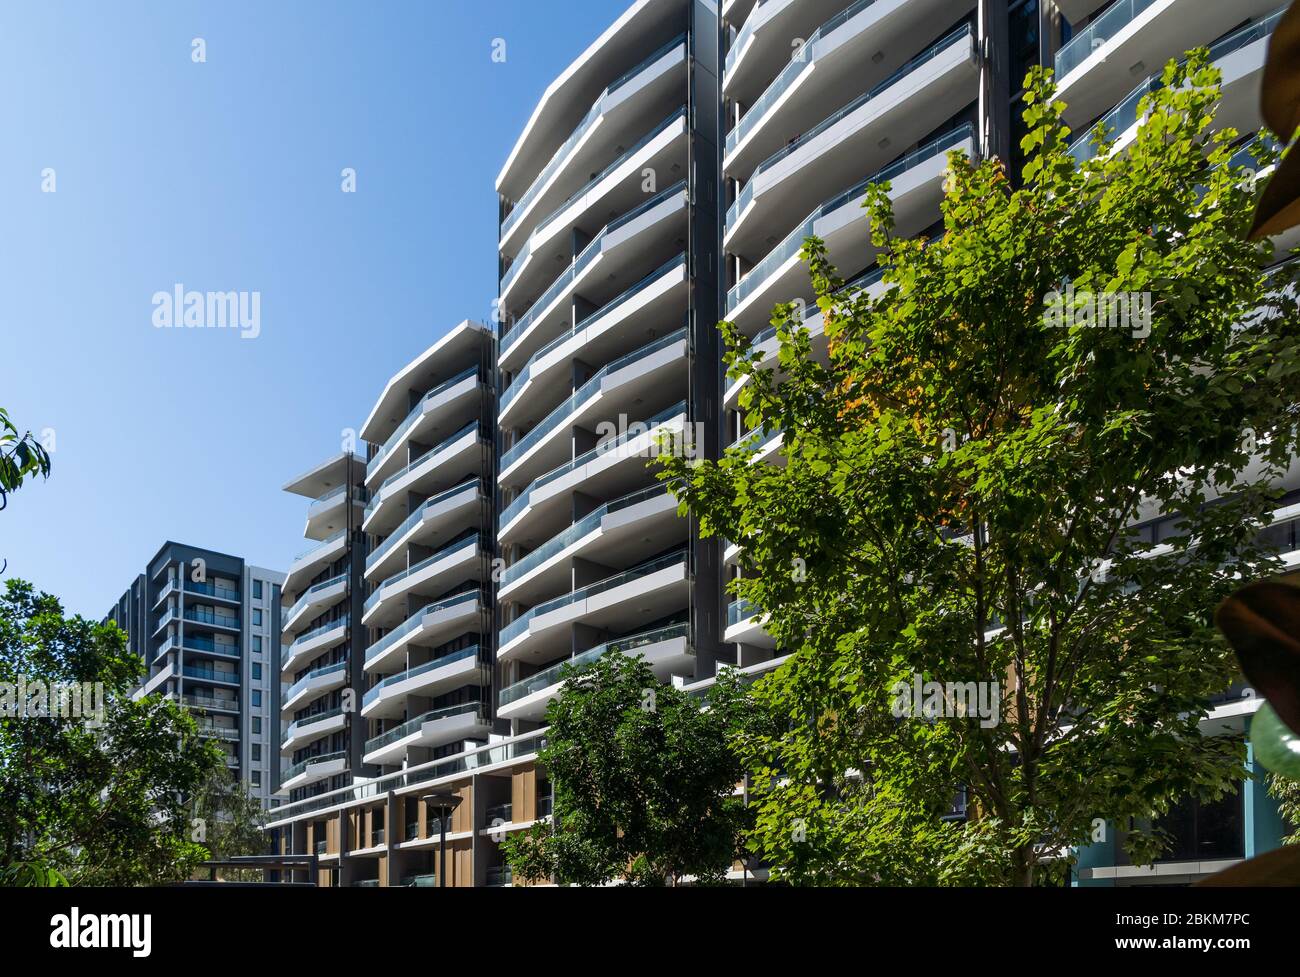 Appartements de grande hauteur à Mascot, dans le sud de Sydney Banque D'Images